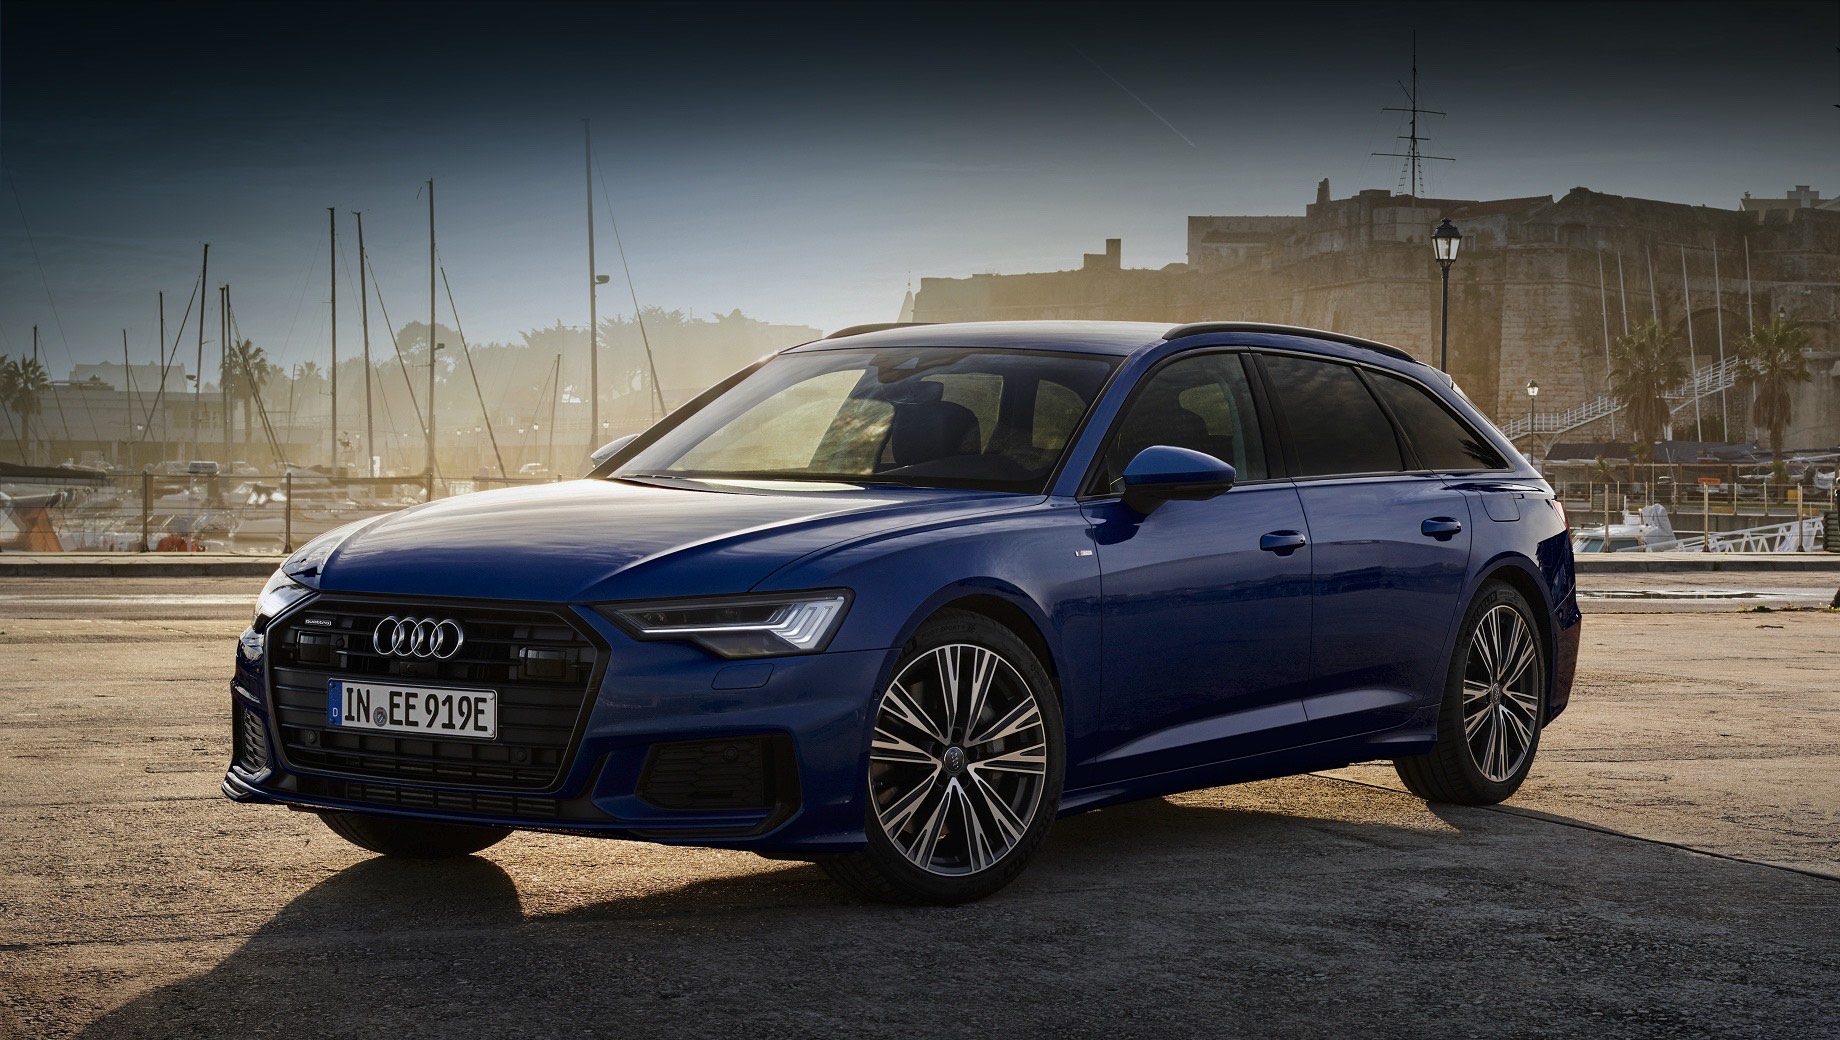 Фирма Audi добавила новый гибрид и обновила прежние